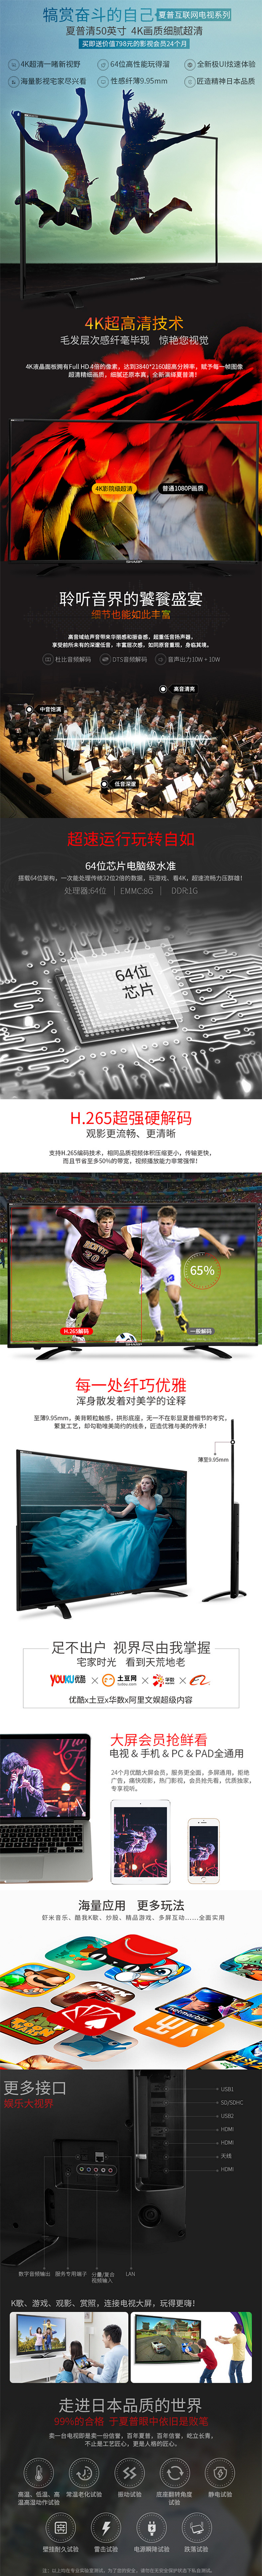 夏普4K高清互联网电视免费试用,评测